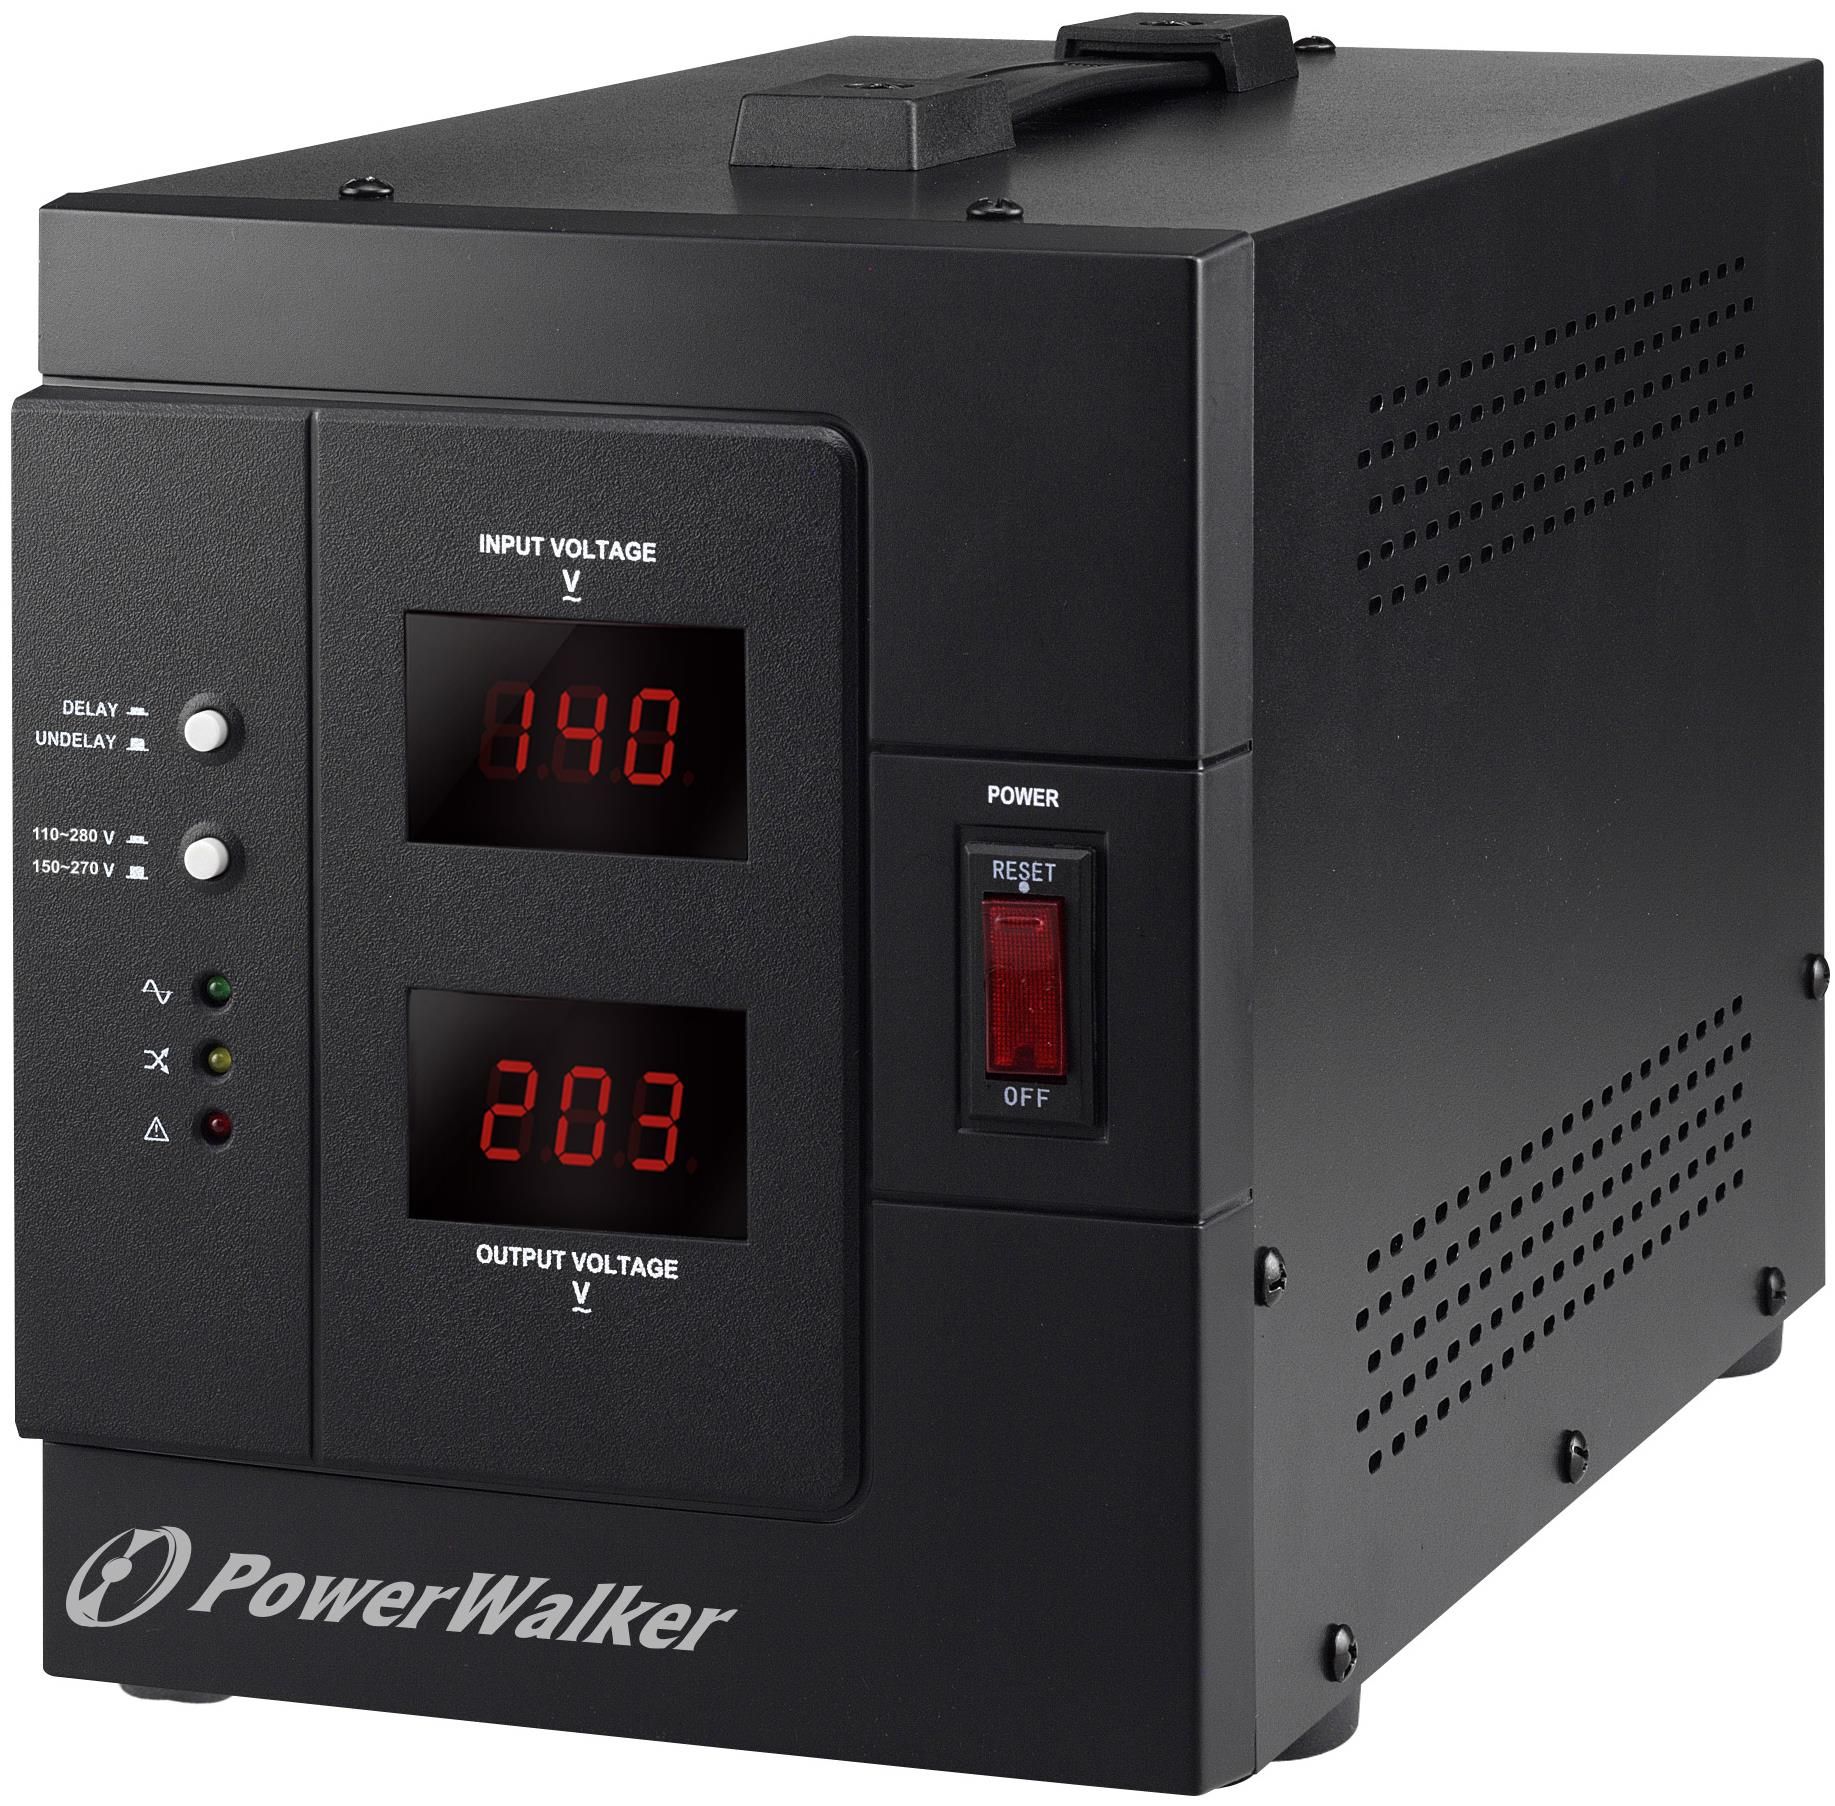 Bluewalker PowerWalker AVR 3000/SIV